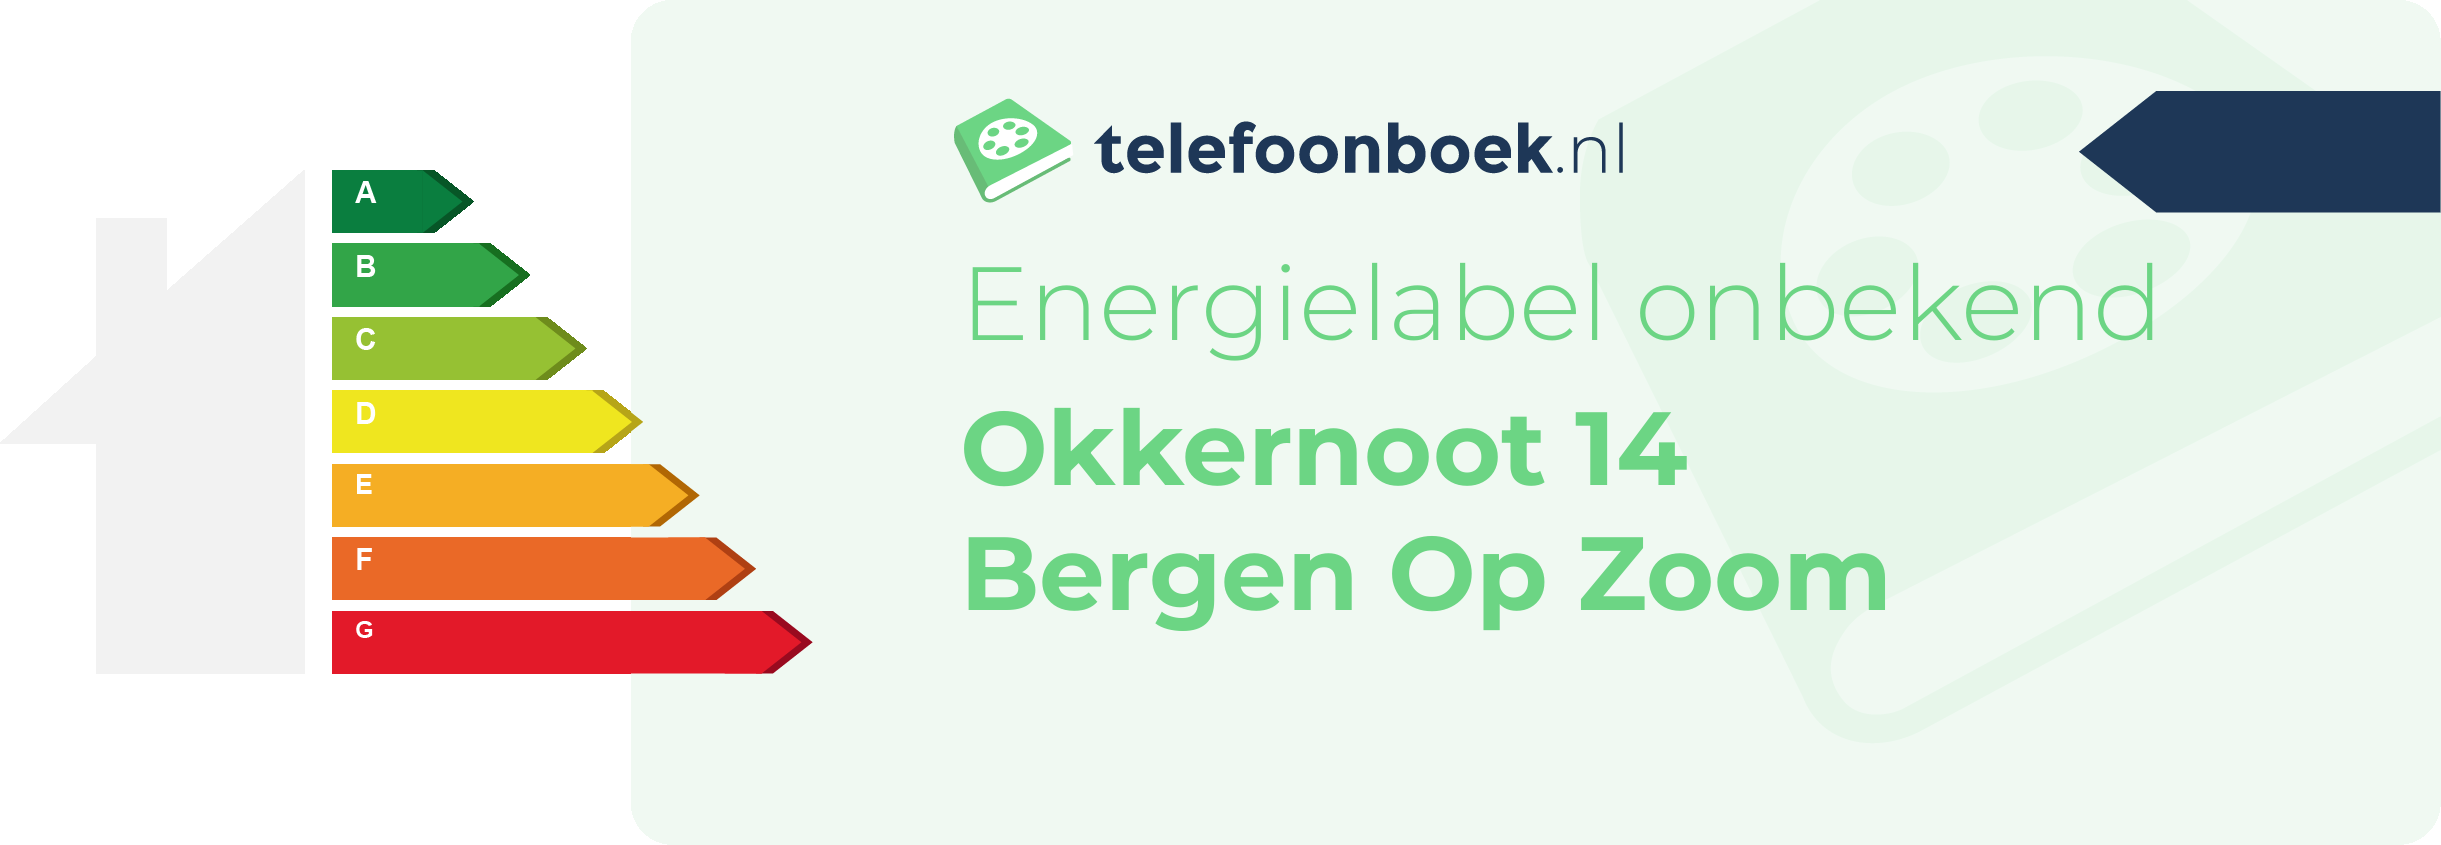 Energielabel Okkernoot 14 Bergen Op Zoom